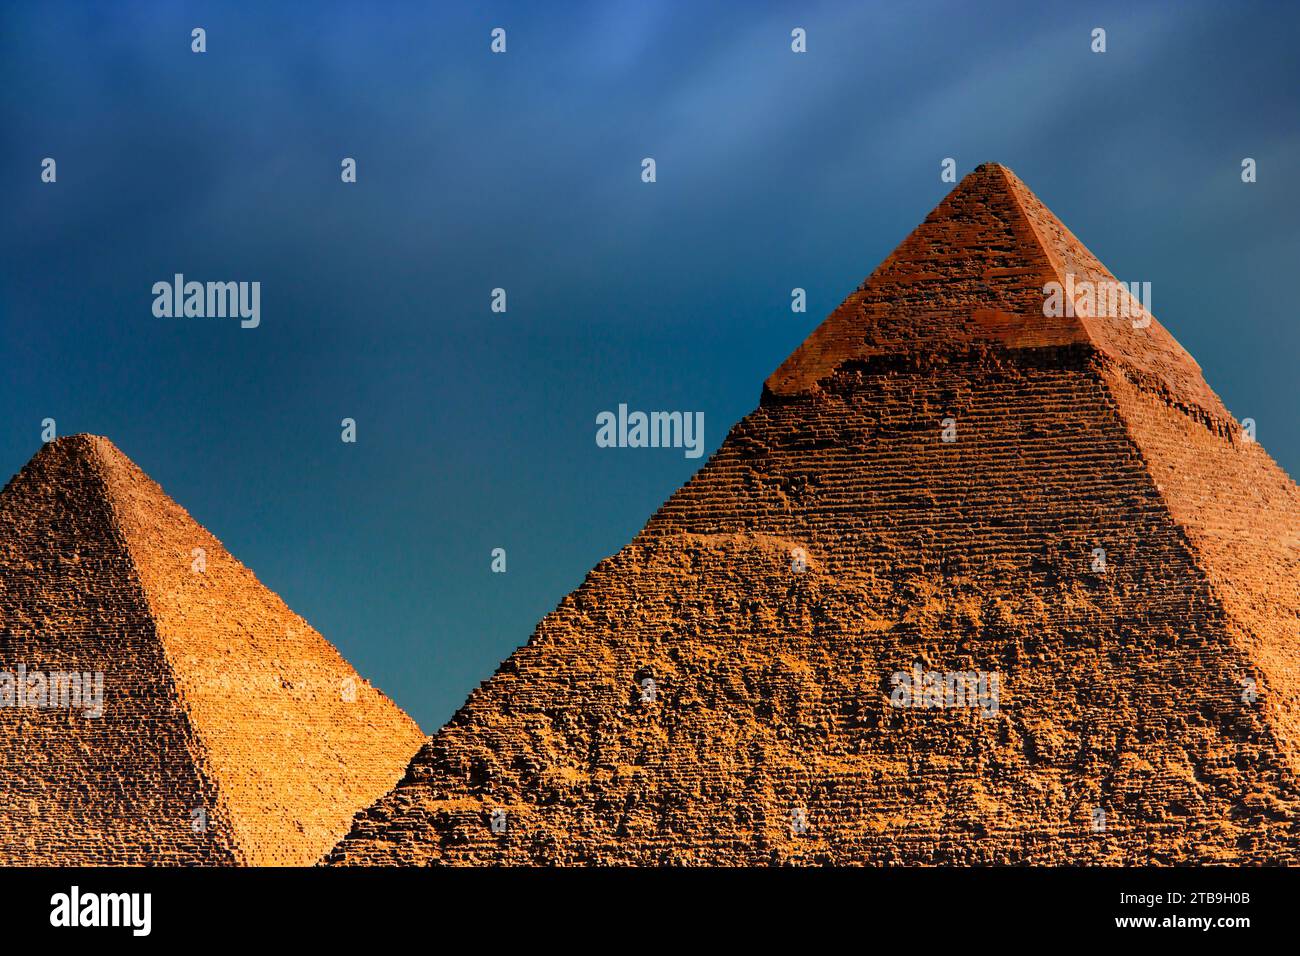 Zwei der wichtigsten Pyramiden von Gizeh, sonnenbeleuchtet mit einem goldenen Farbton, die große Pyramide (Khufu) unter einem dunklen, bewölkten Himmel; Gizeh, Ägypten Stockfoto